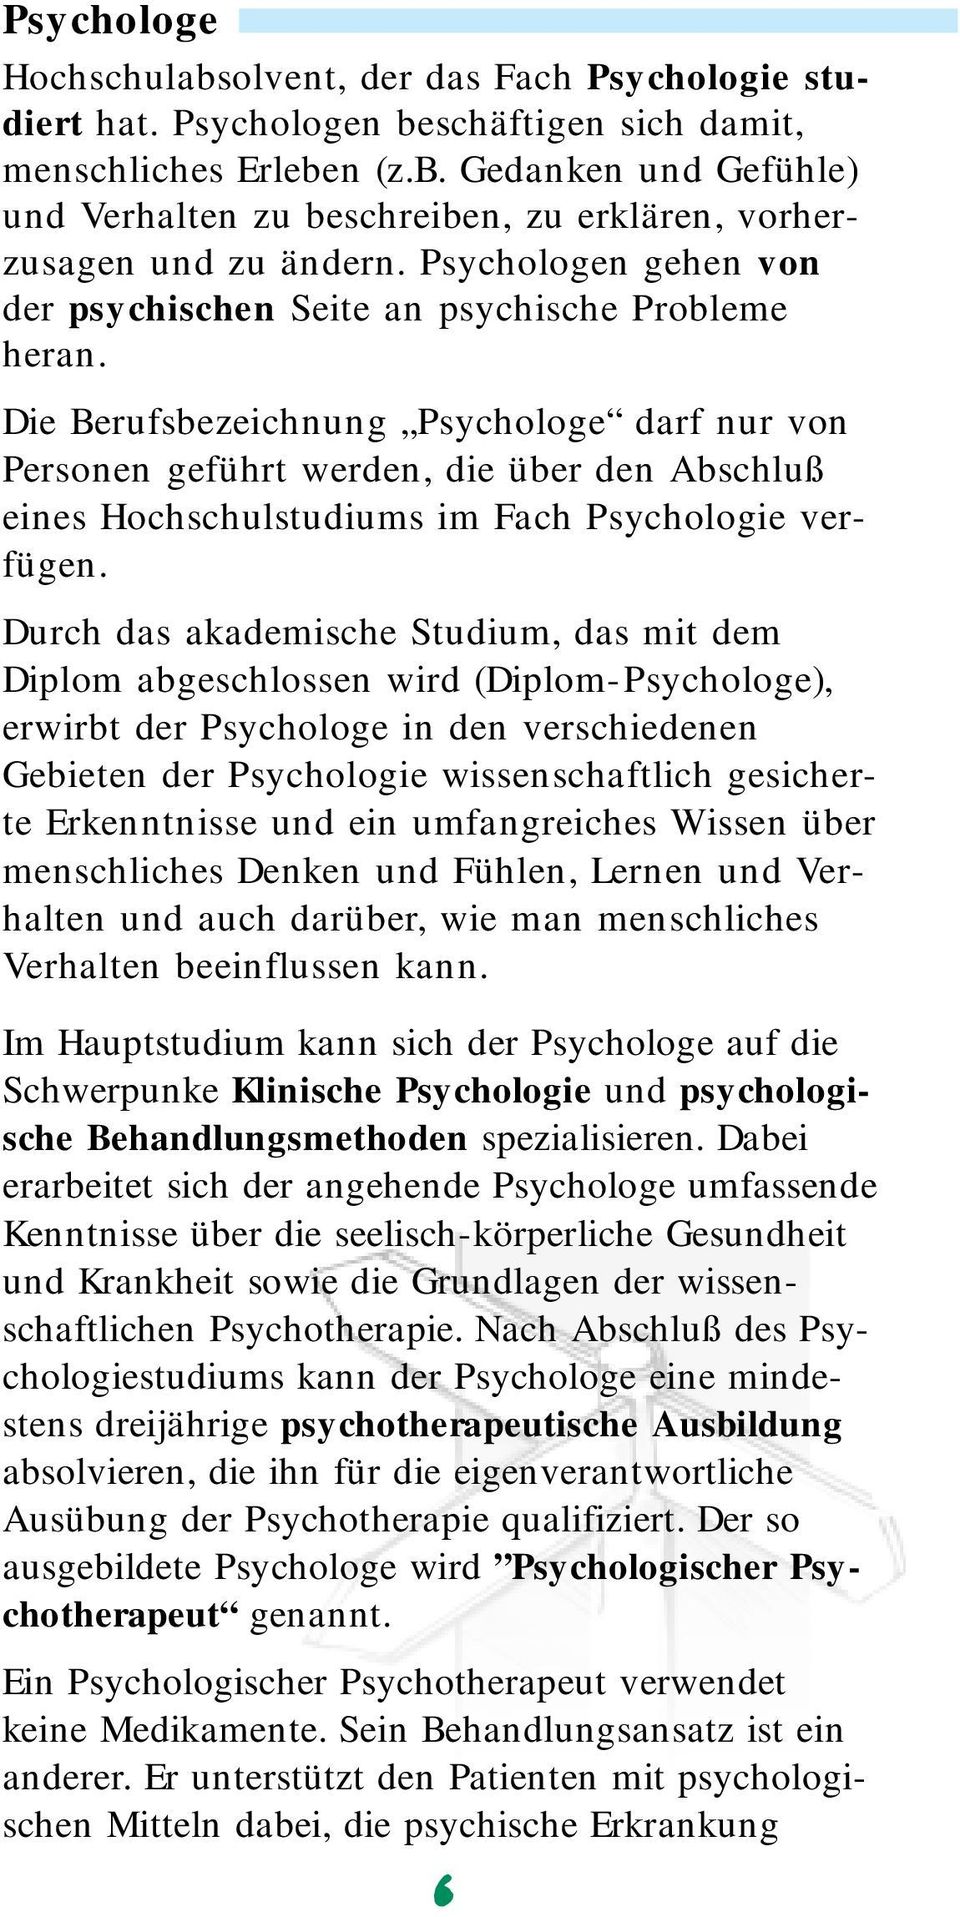 Die Berufsbezeichnung Psychologe darf nur von Personen geführt werden, die über den Abschluß eines Hochschulstudiums im Fach Psychologie verfügen.